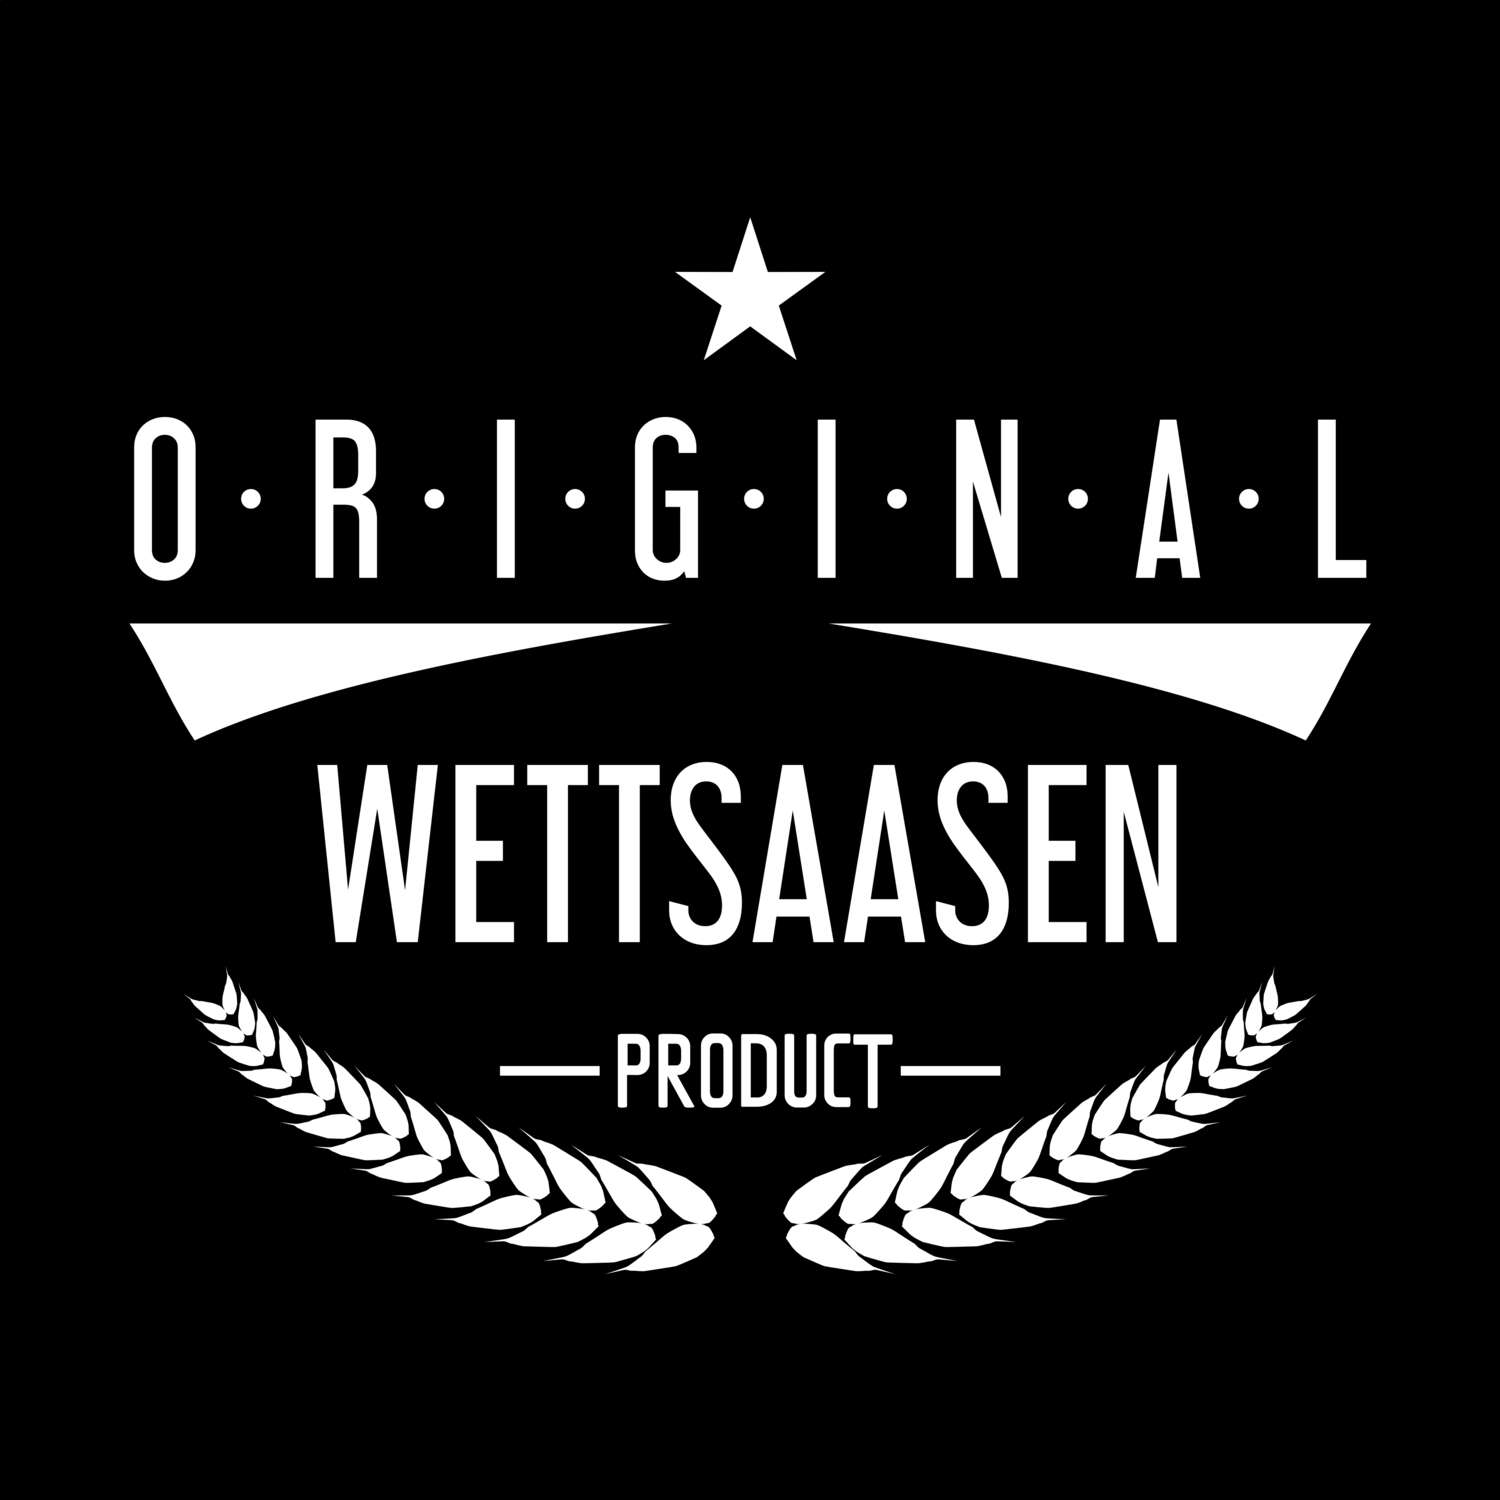 Wettsaasen T-Shirt »Original Product«